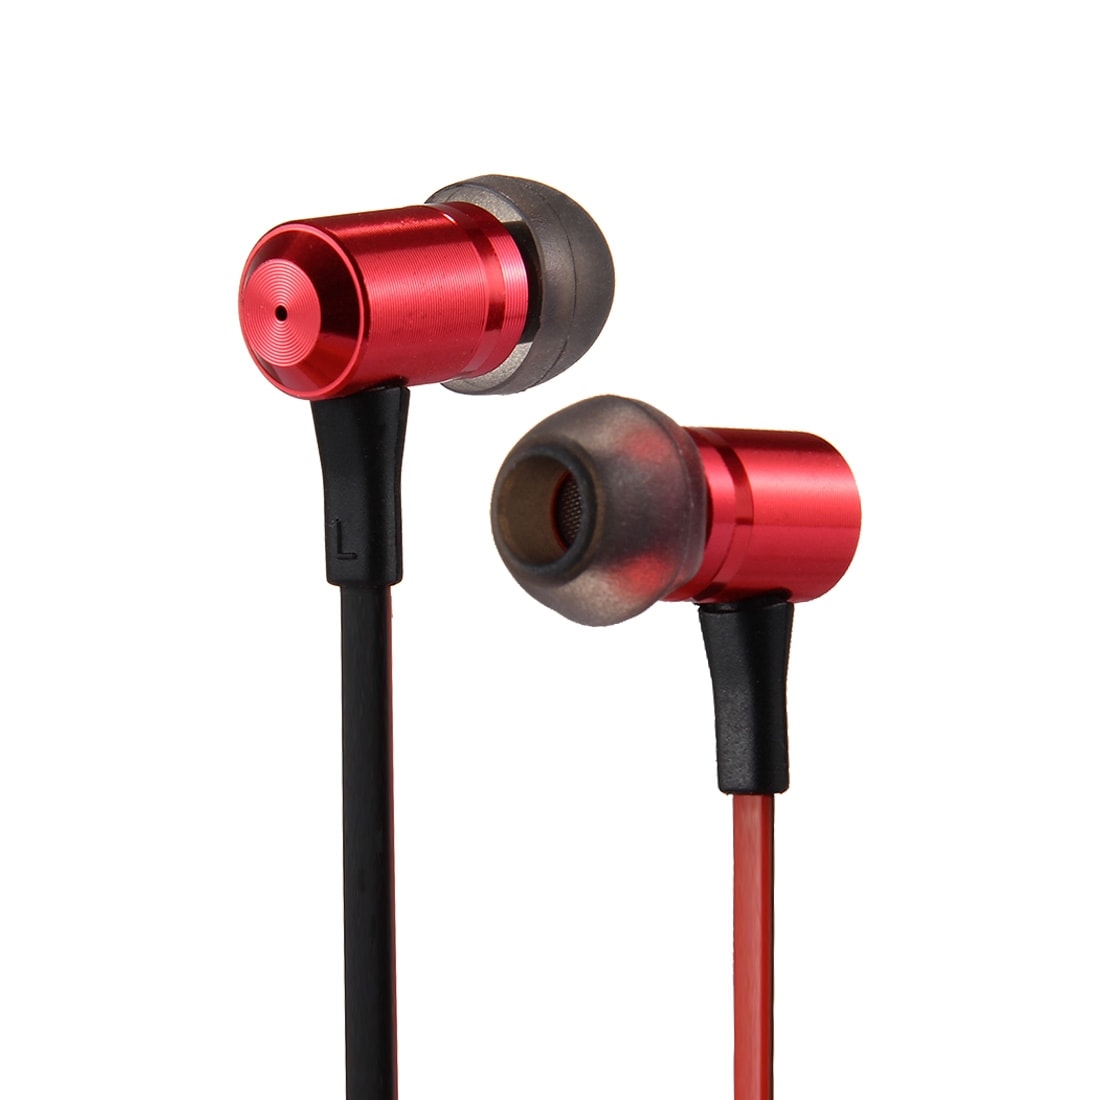 Røde Trådløse HiFi høretelefoner iPhone / Android med Mic